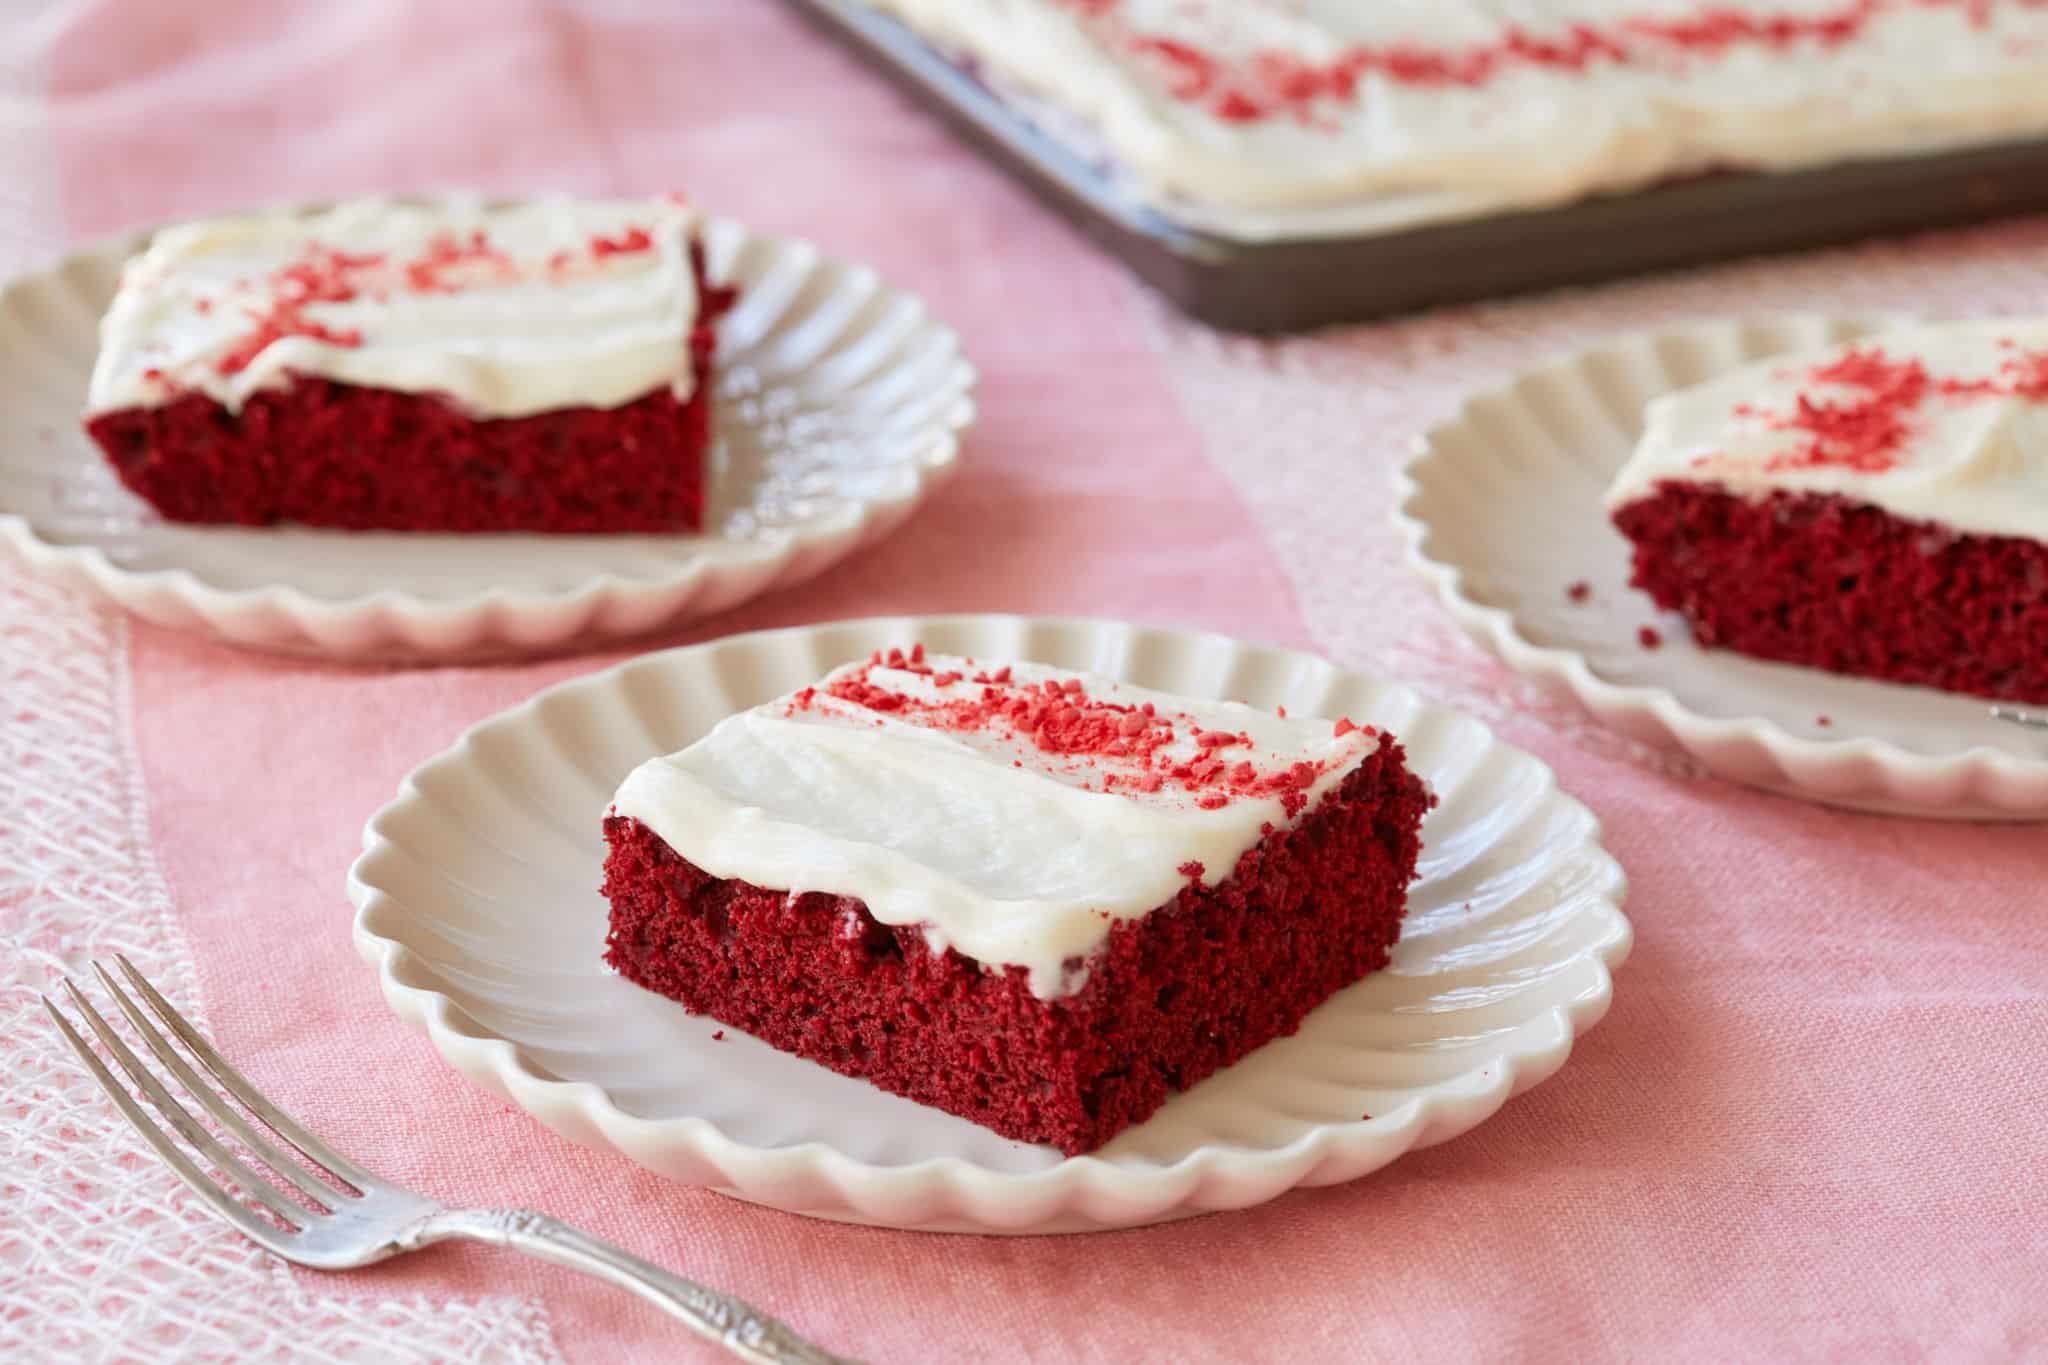 Red velvet sheet cake slices on dishes.